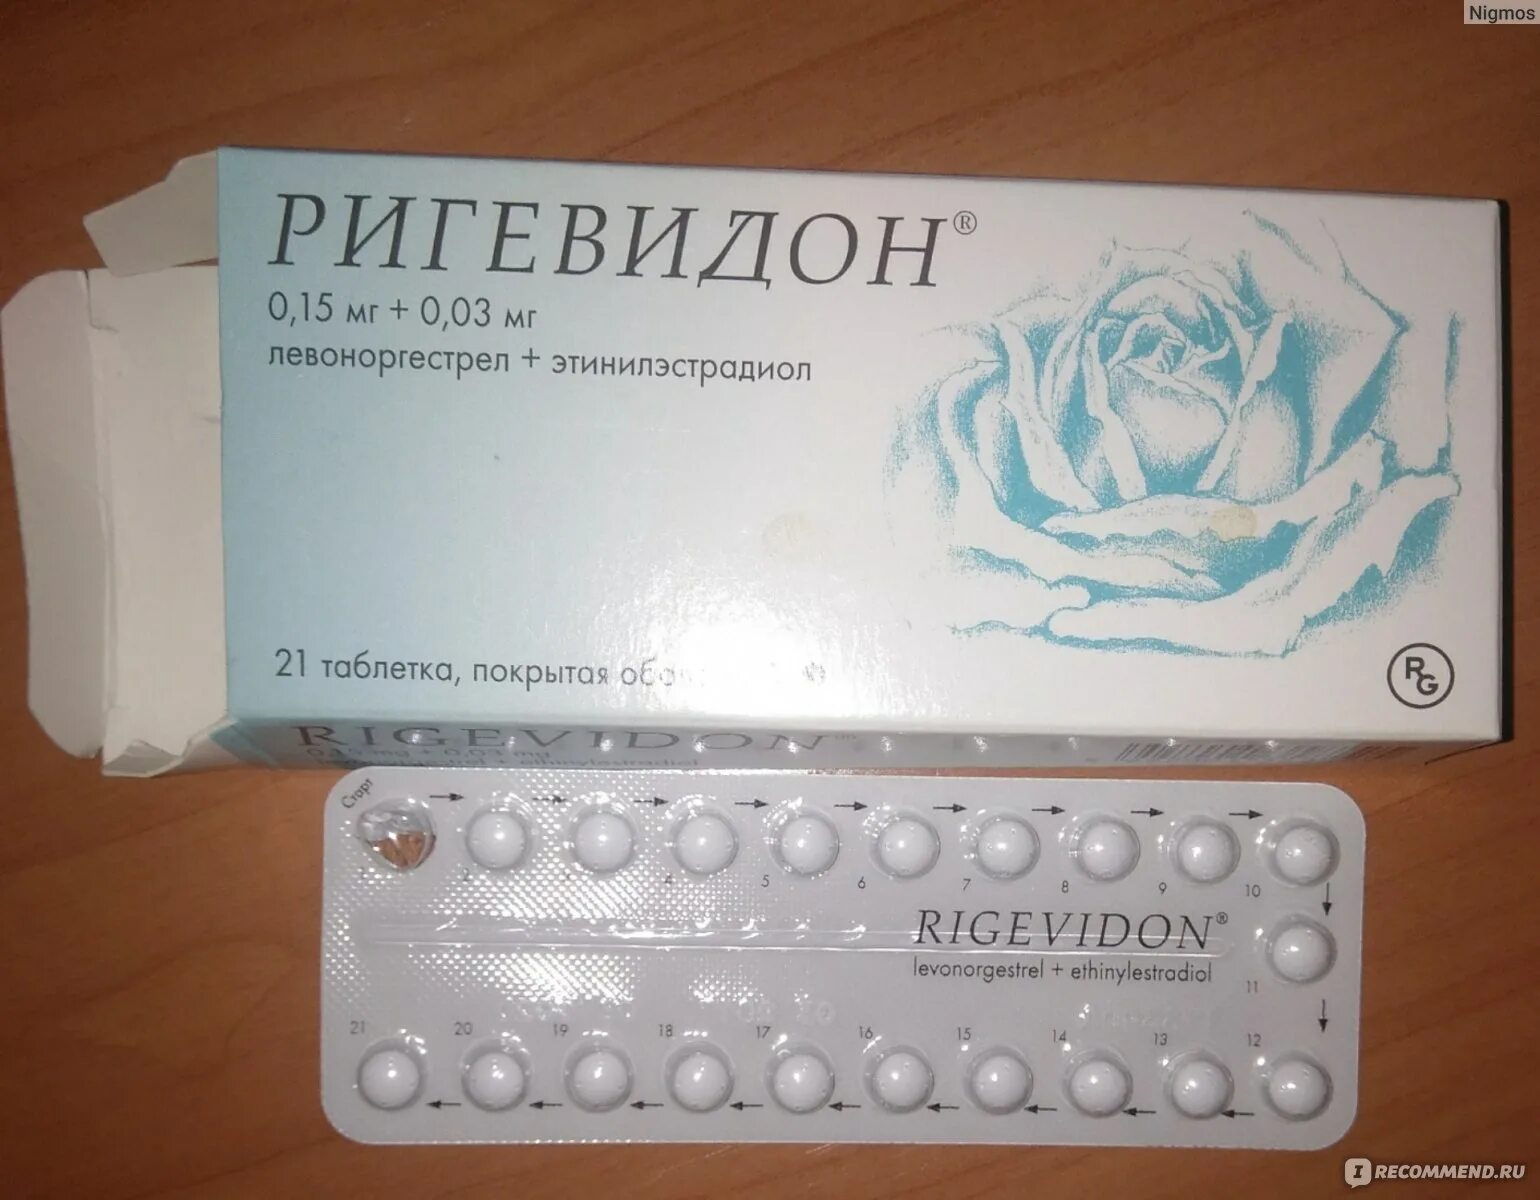 Противозачаточные без назначения врача. Противозачаточные таблетки ригевидон. Гормональный препарат ригевидон. Противозачаточные таблетки для женщин ригевидон. Таблетки противозачаточные реговидон.